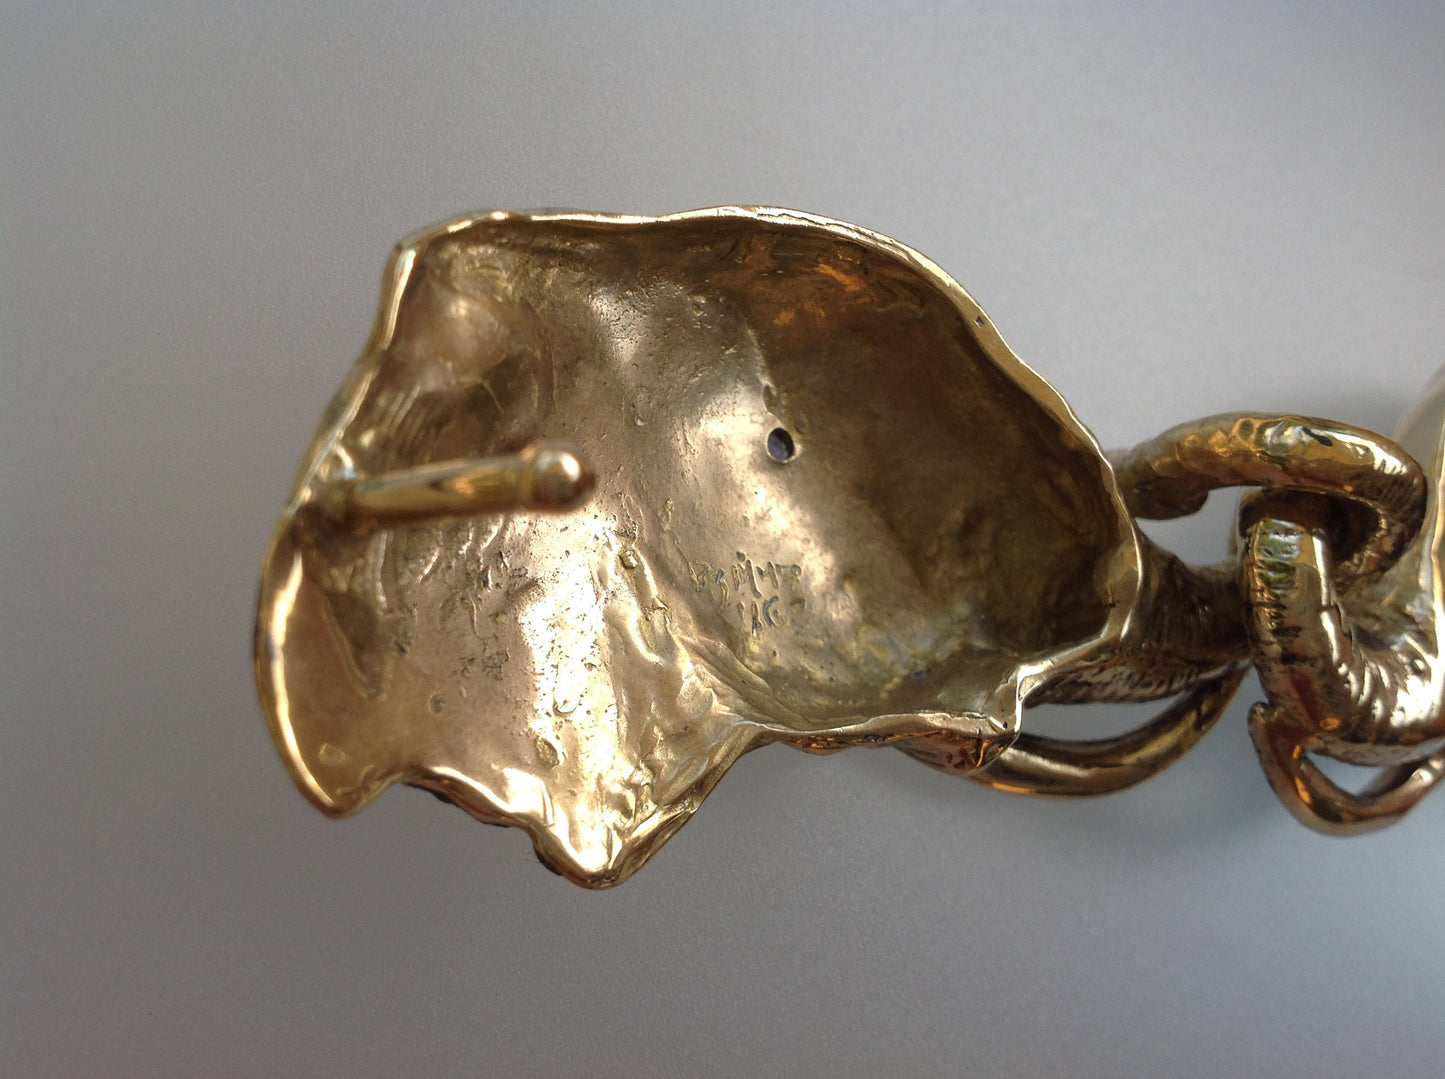 Articulating Elephants belt buckle Sculpture jewelry in bronze NO STONES in eyes.  Zimmer jewelry